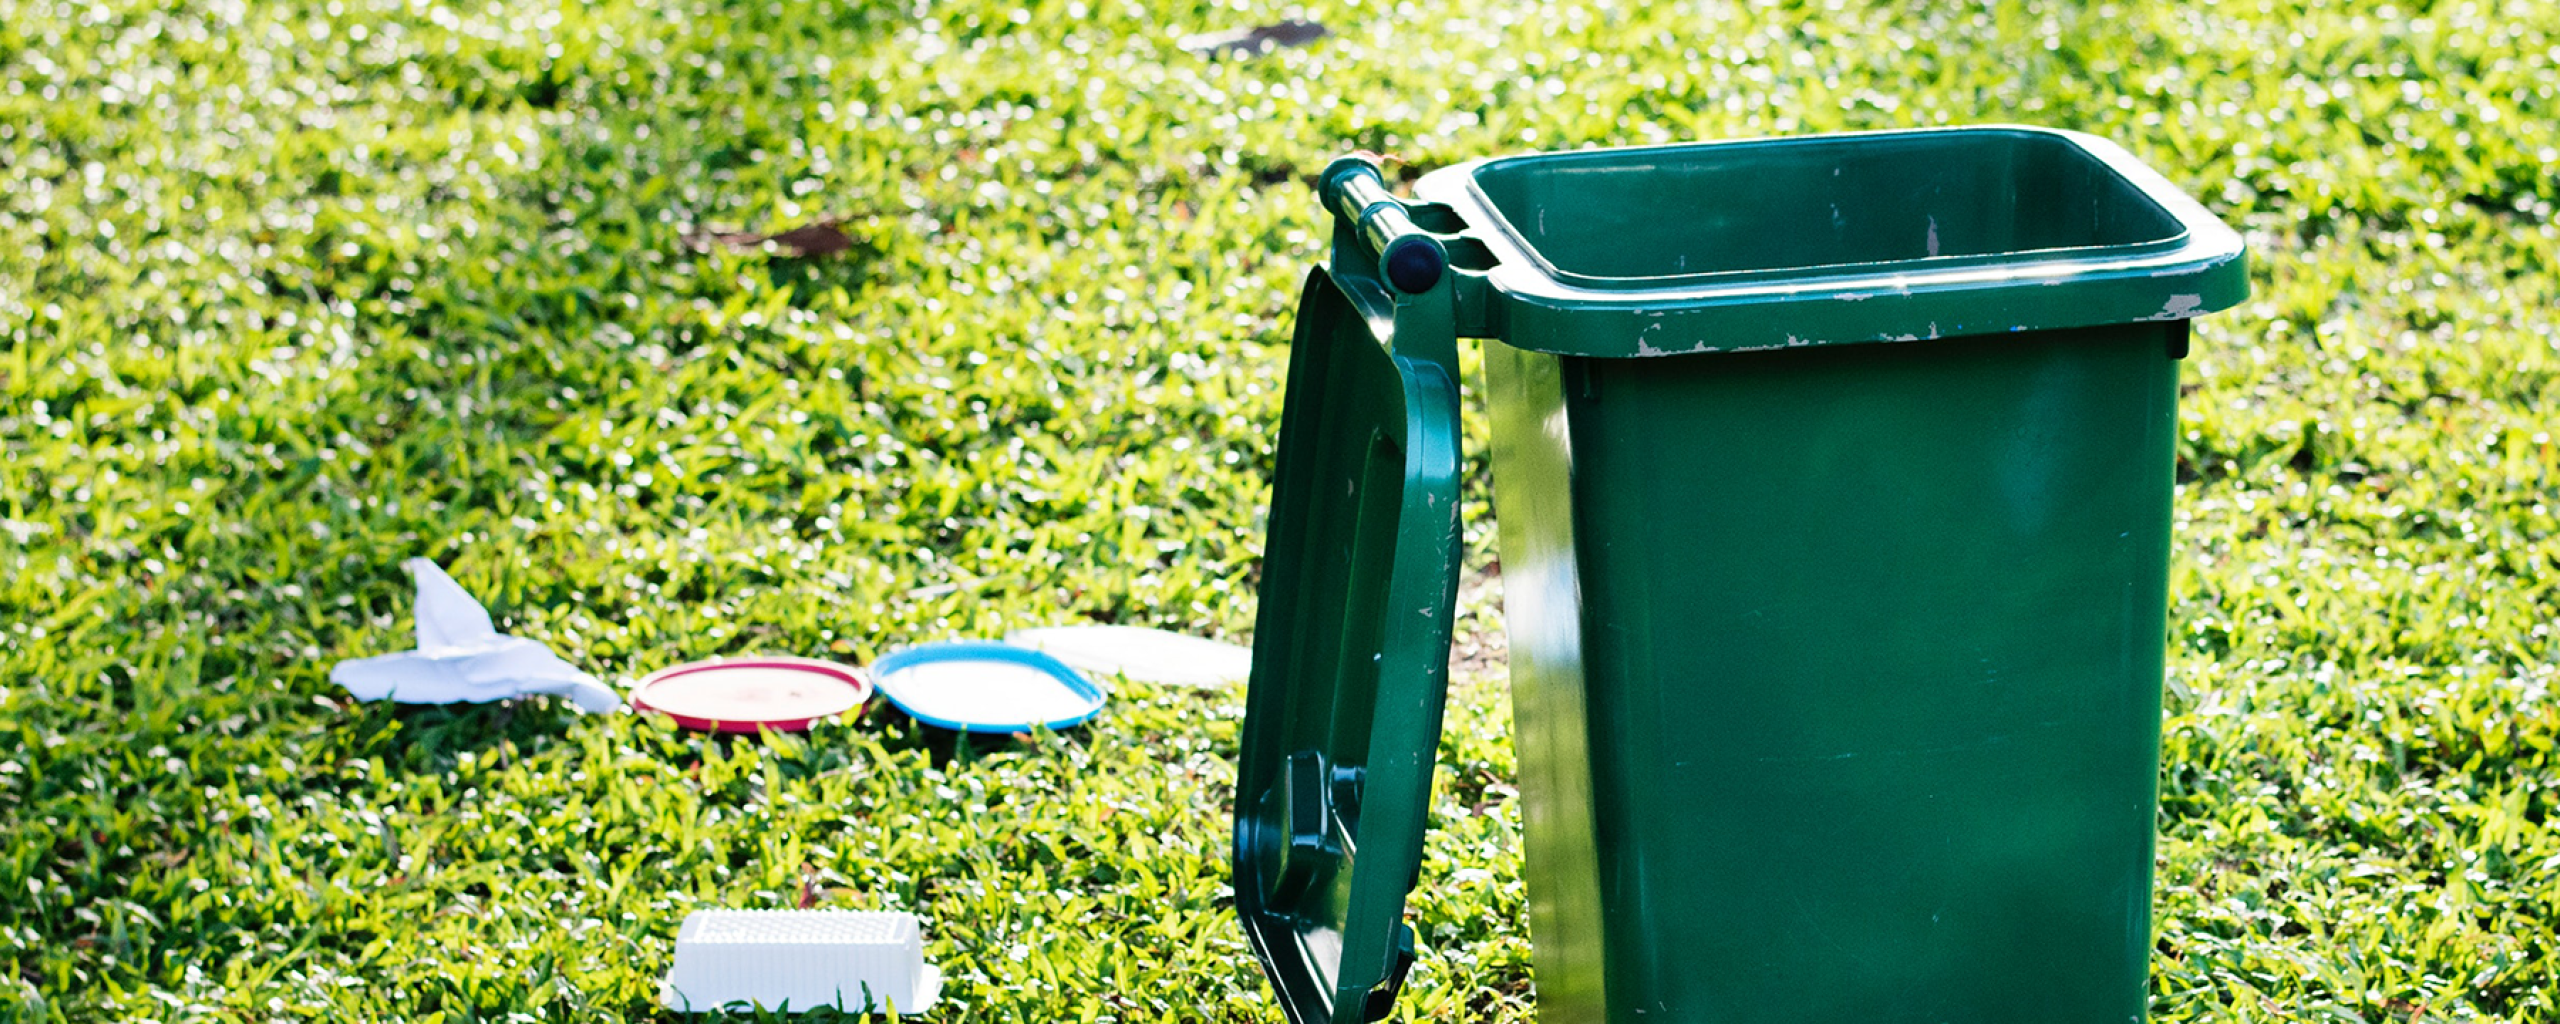 groene container op grasveld met afval naast de container